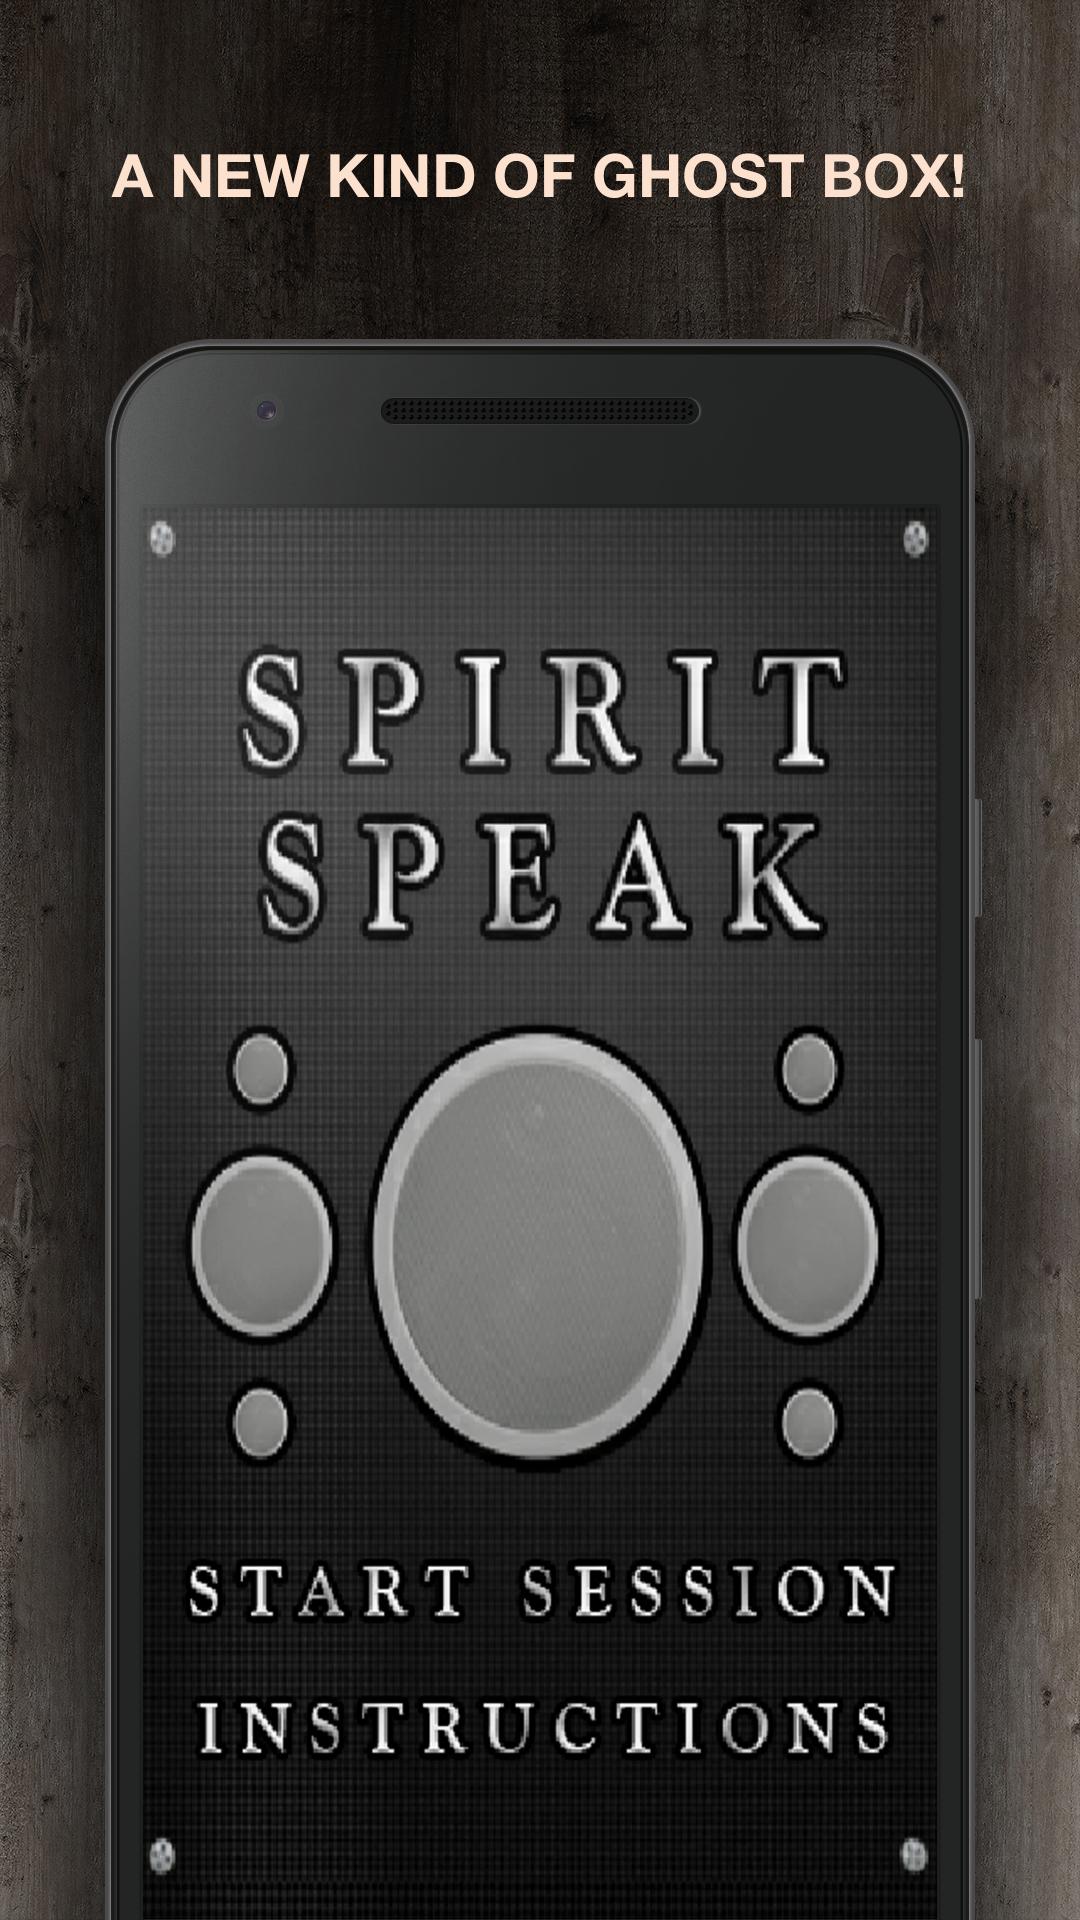 Spirit Speak